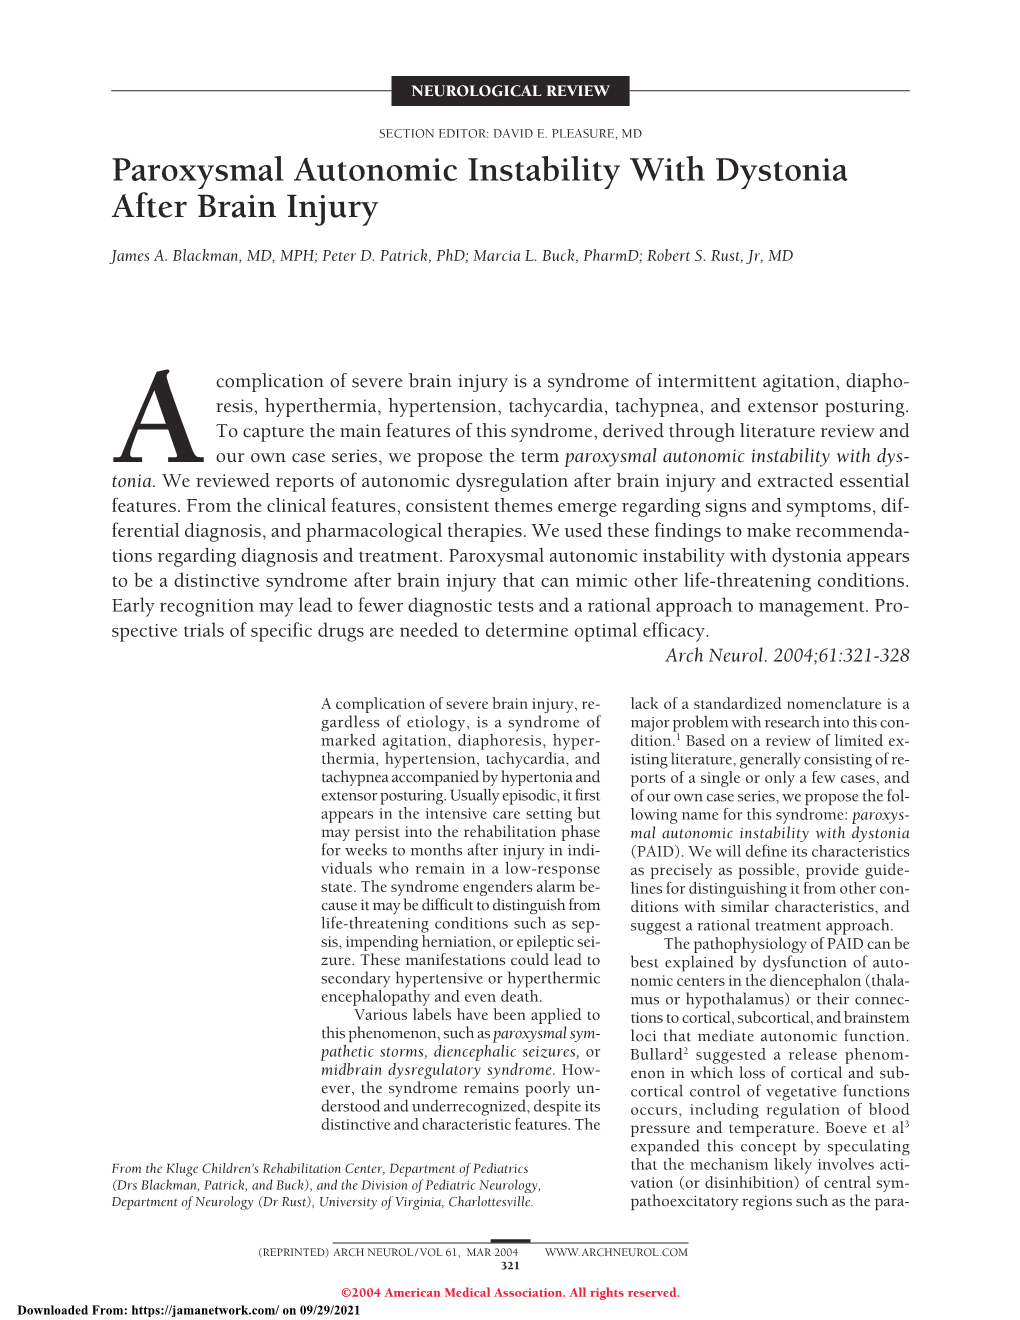 Paroxysmal Autonomic Instability with Dystonia After Brain Injury